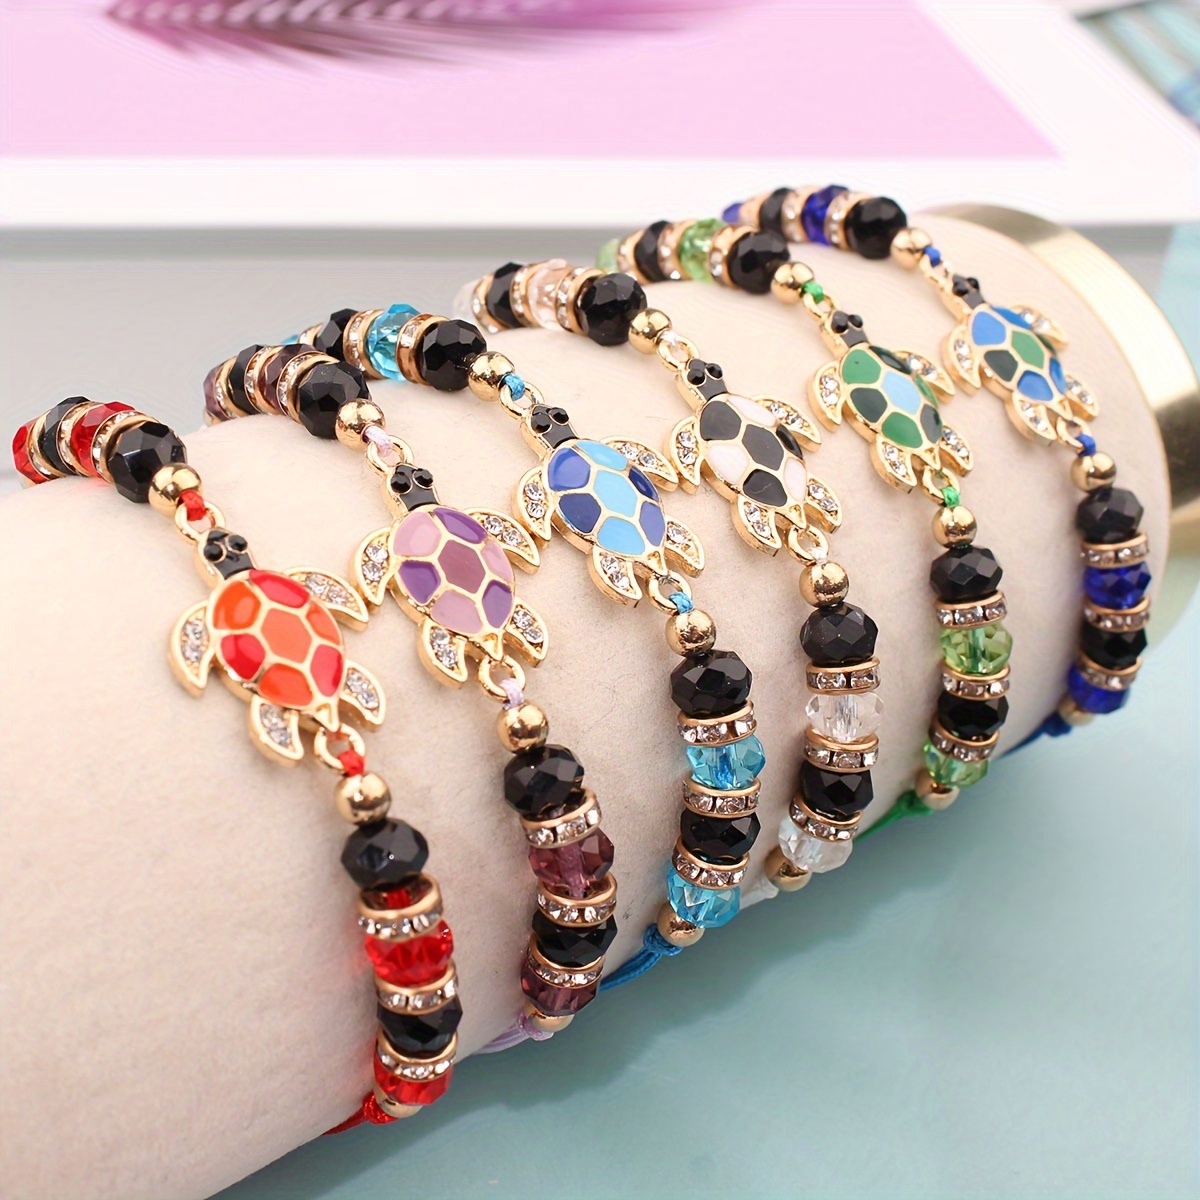 

12 Pcs Set Of Multi Color Beads With Turtle Design Bracelet Vintage Bohemian Style For Women Friend Hand Decor